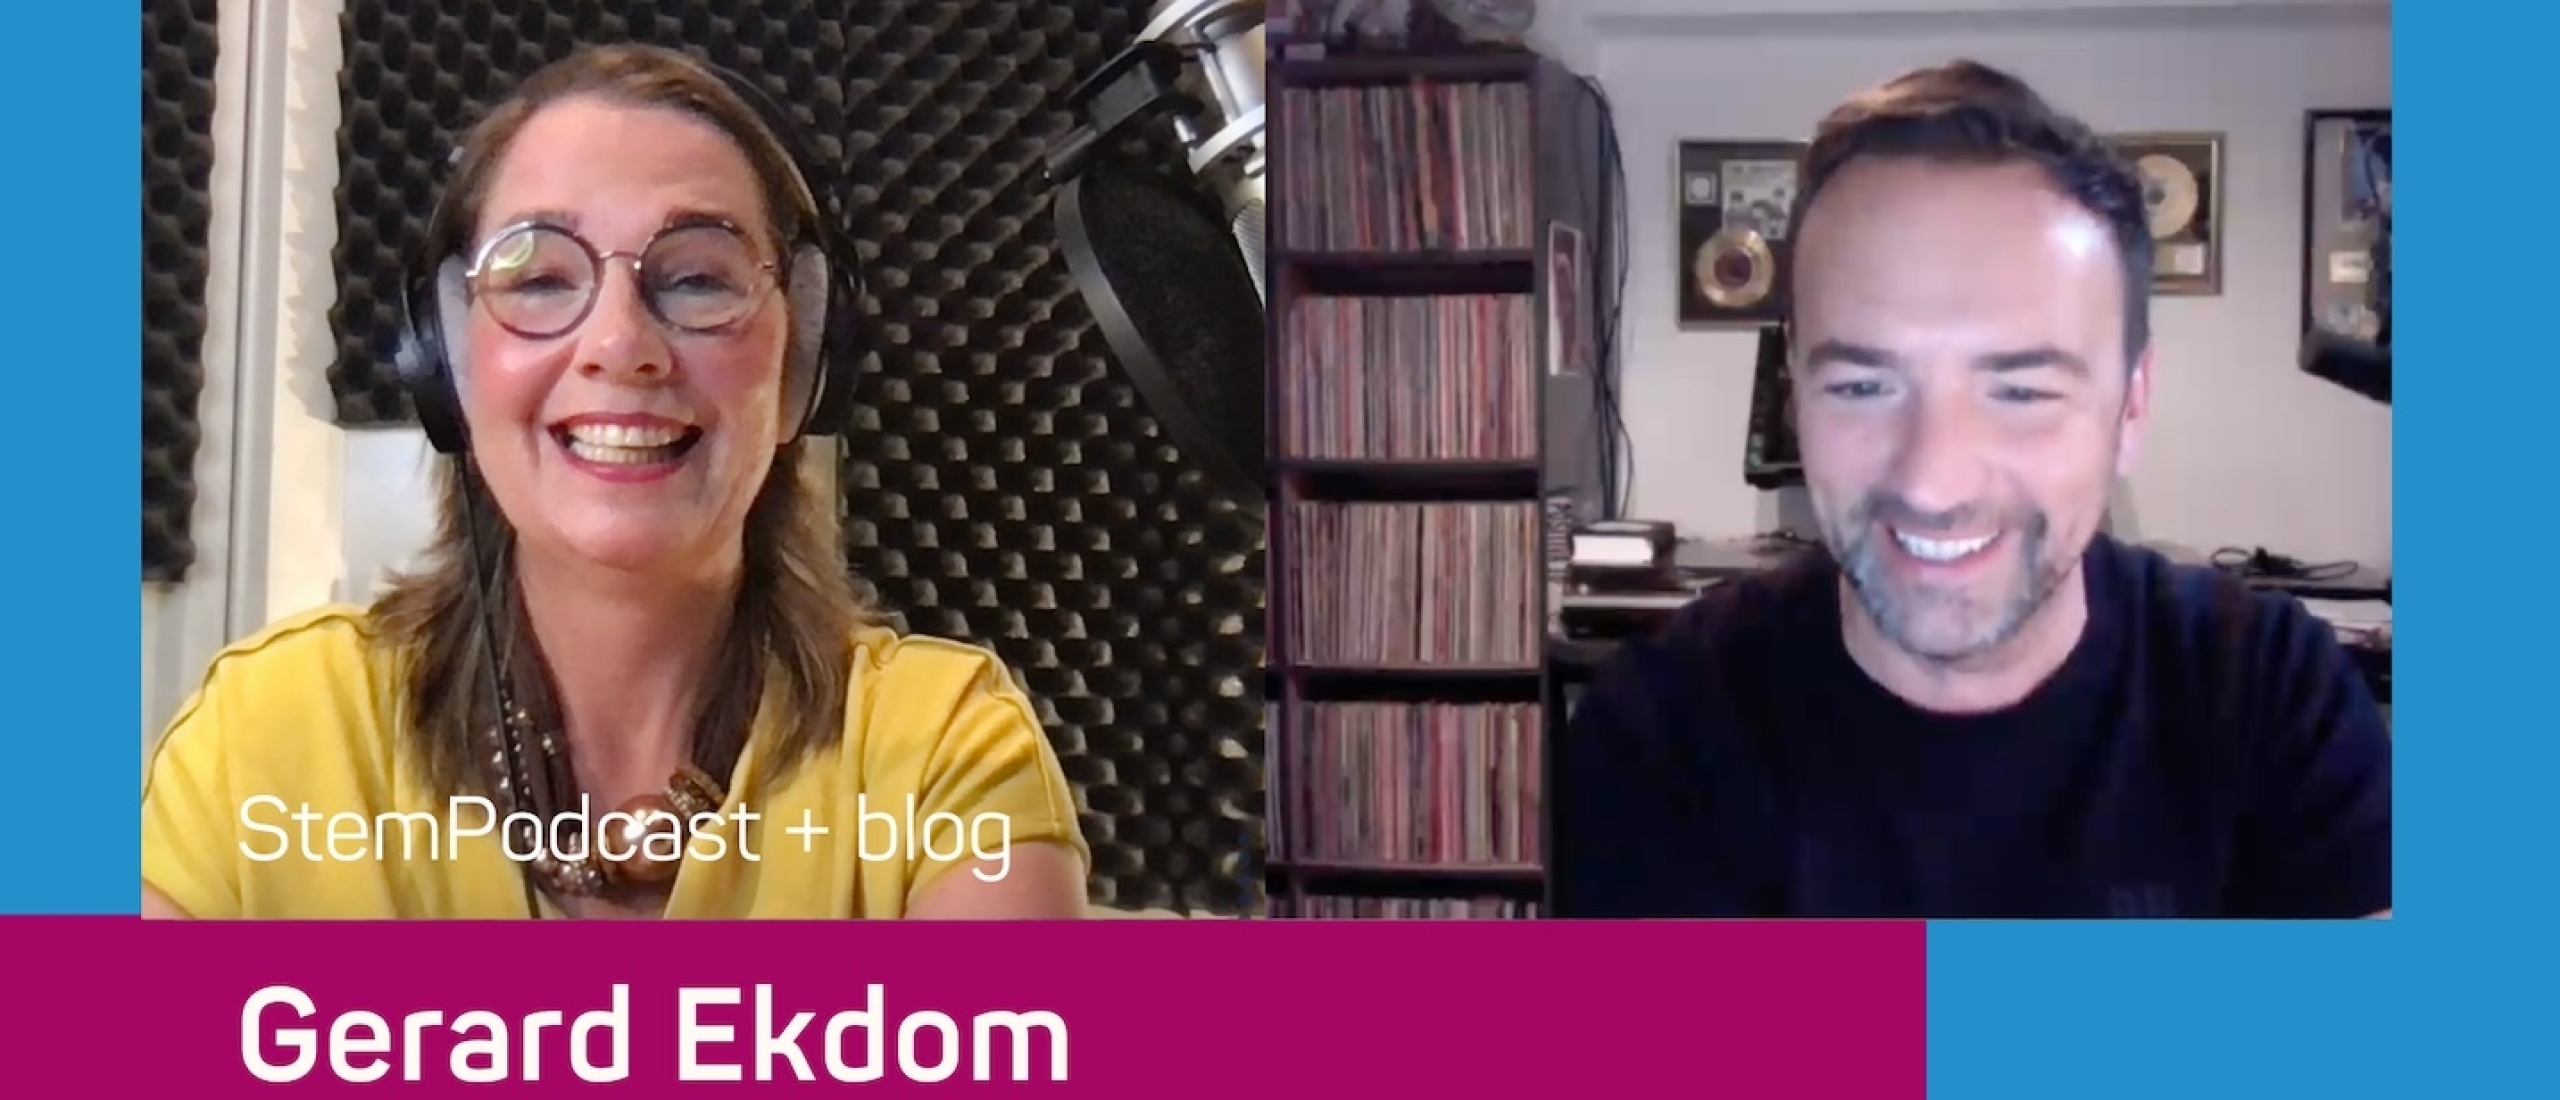 Radio-dj Gerard Ekdom in de StemPodcast: 'Mensen krijgen een band met je stem'